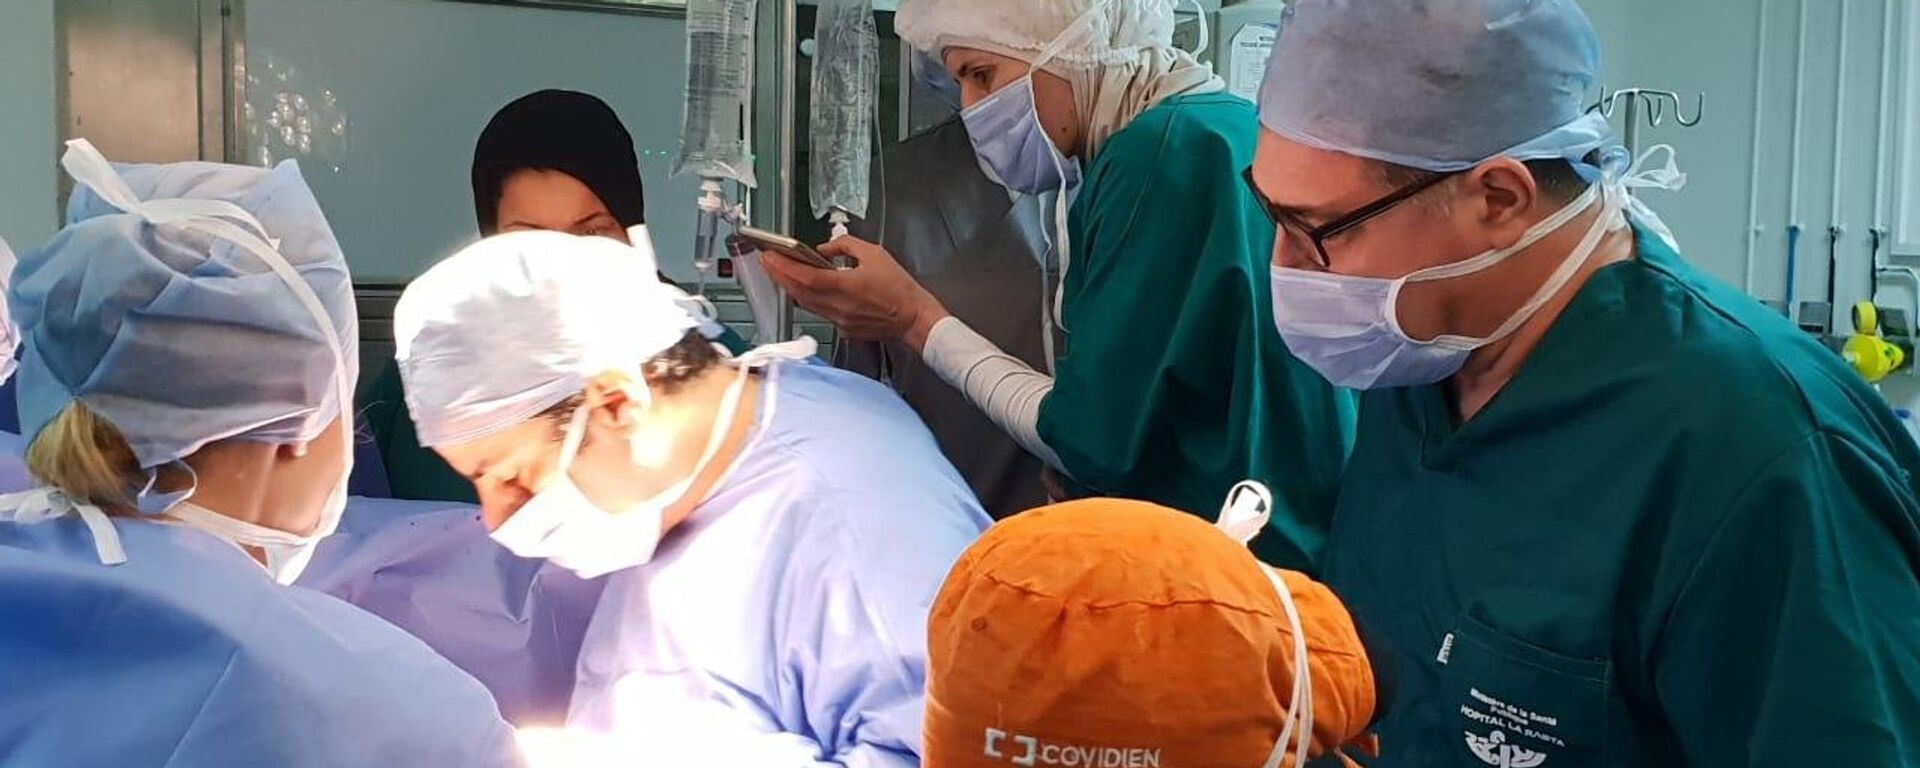 نجاح عمليات زرع القلب في تونس - سبوتنيك عربي, 1920, 29.06.2019